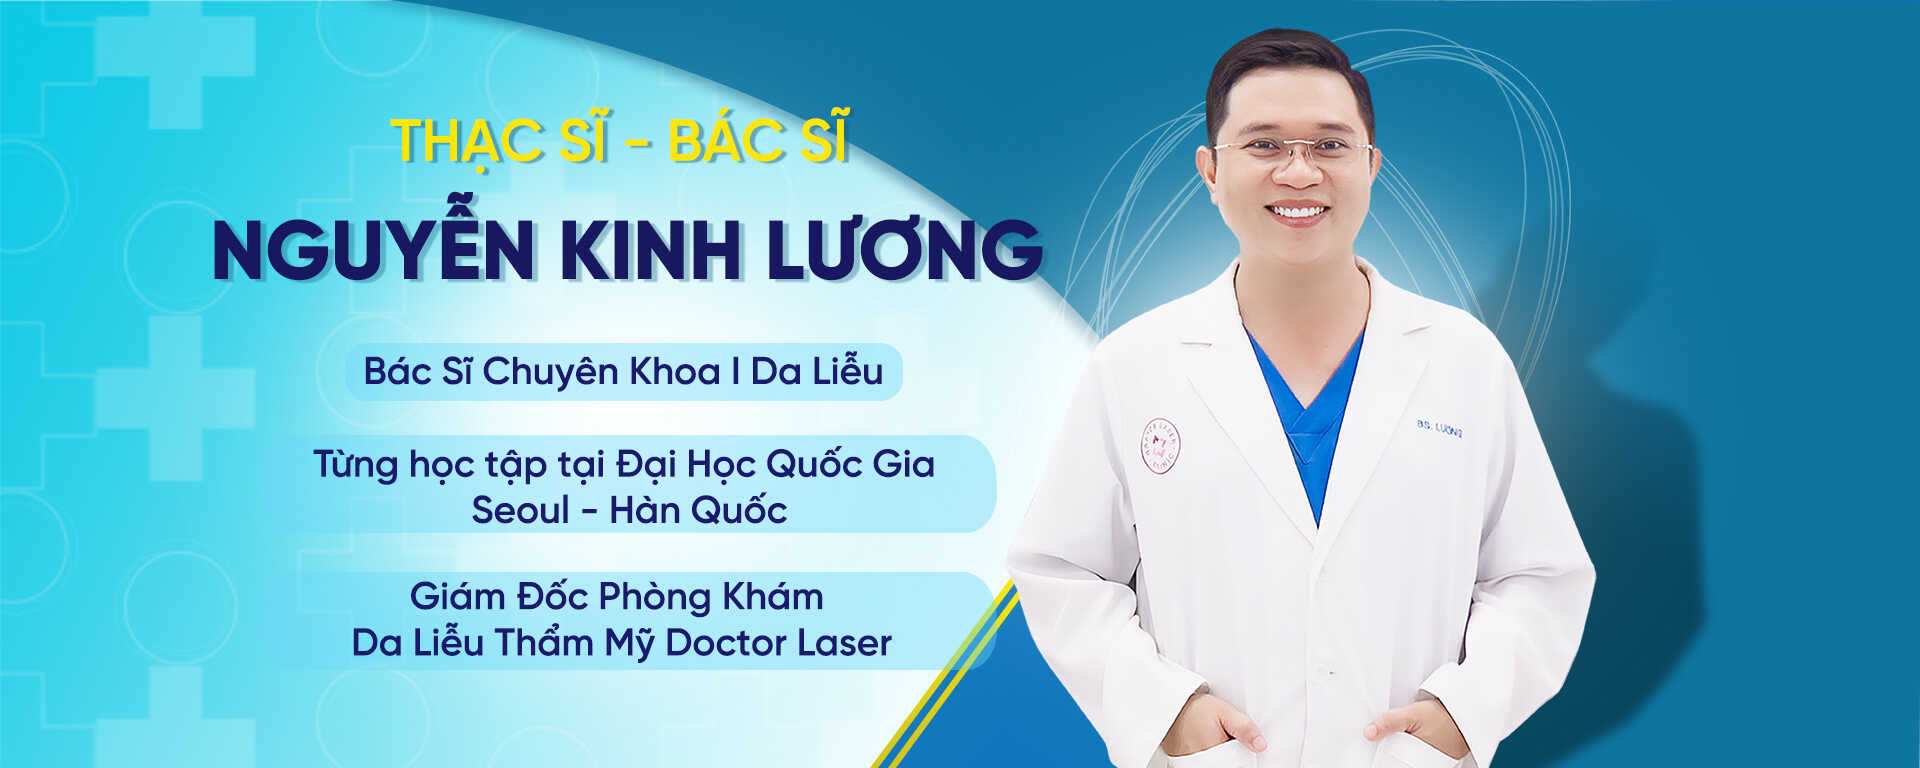 Thạc sĩ Bác sĩ Nguyễn Kinh Lương tại Phòng khám Doctor Laser